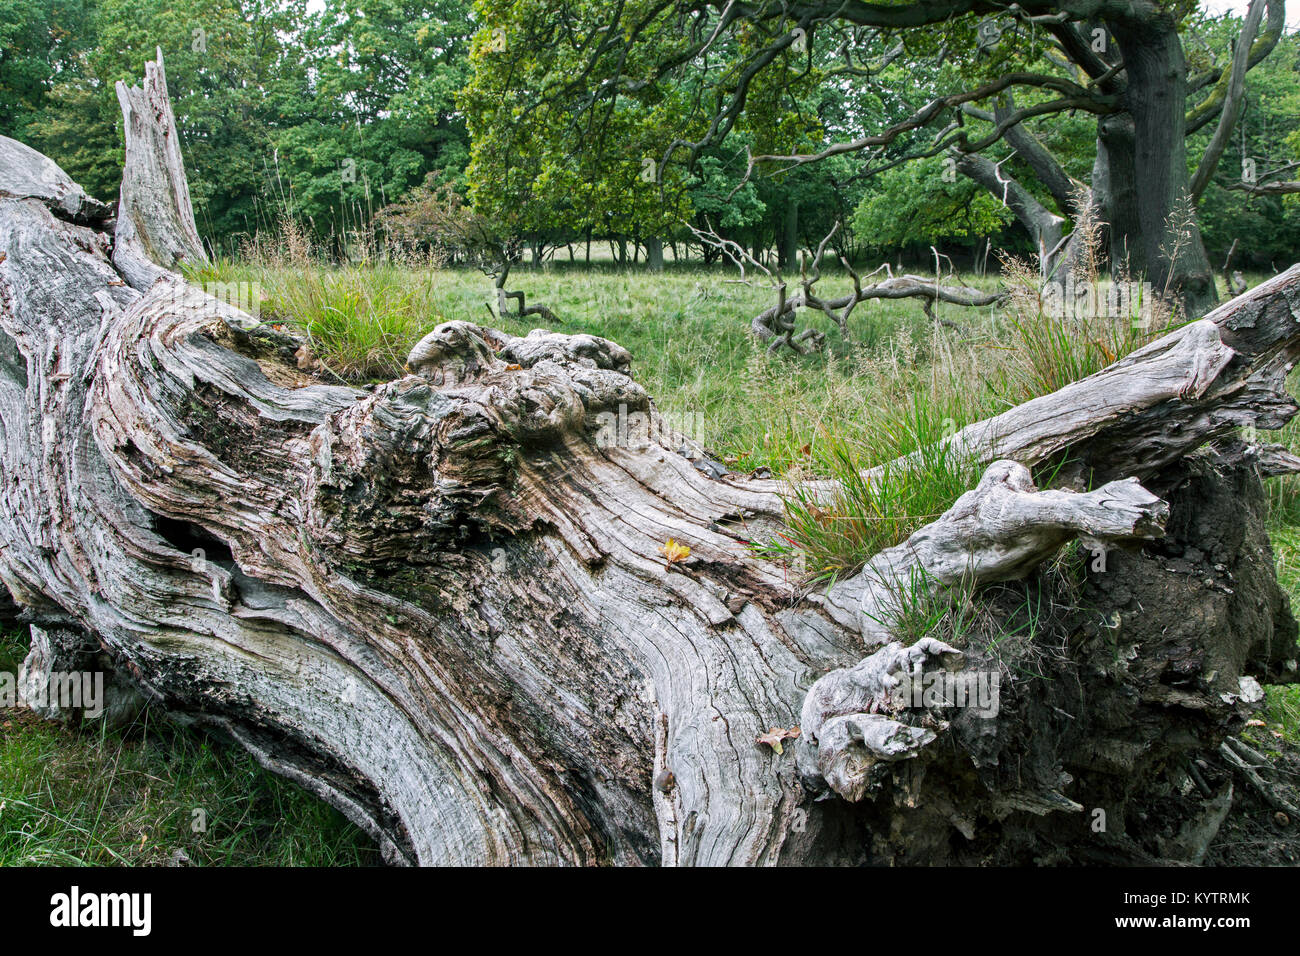 Vieux chêne anglais tombés / arbre de chêne pédonculé (Quercus robur) dans la région de Jaegersborg Dyrehave Dyrehaven / près de Copenhague, Danemark Banque D'Images